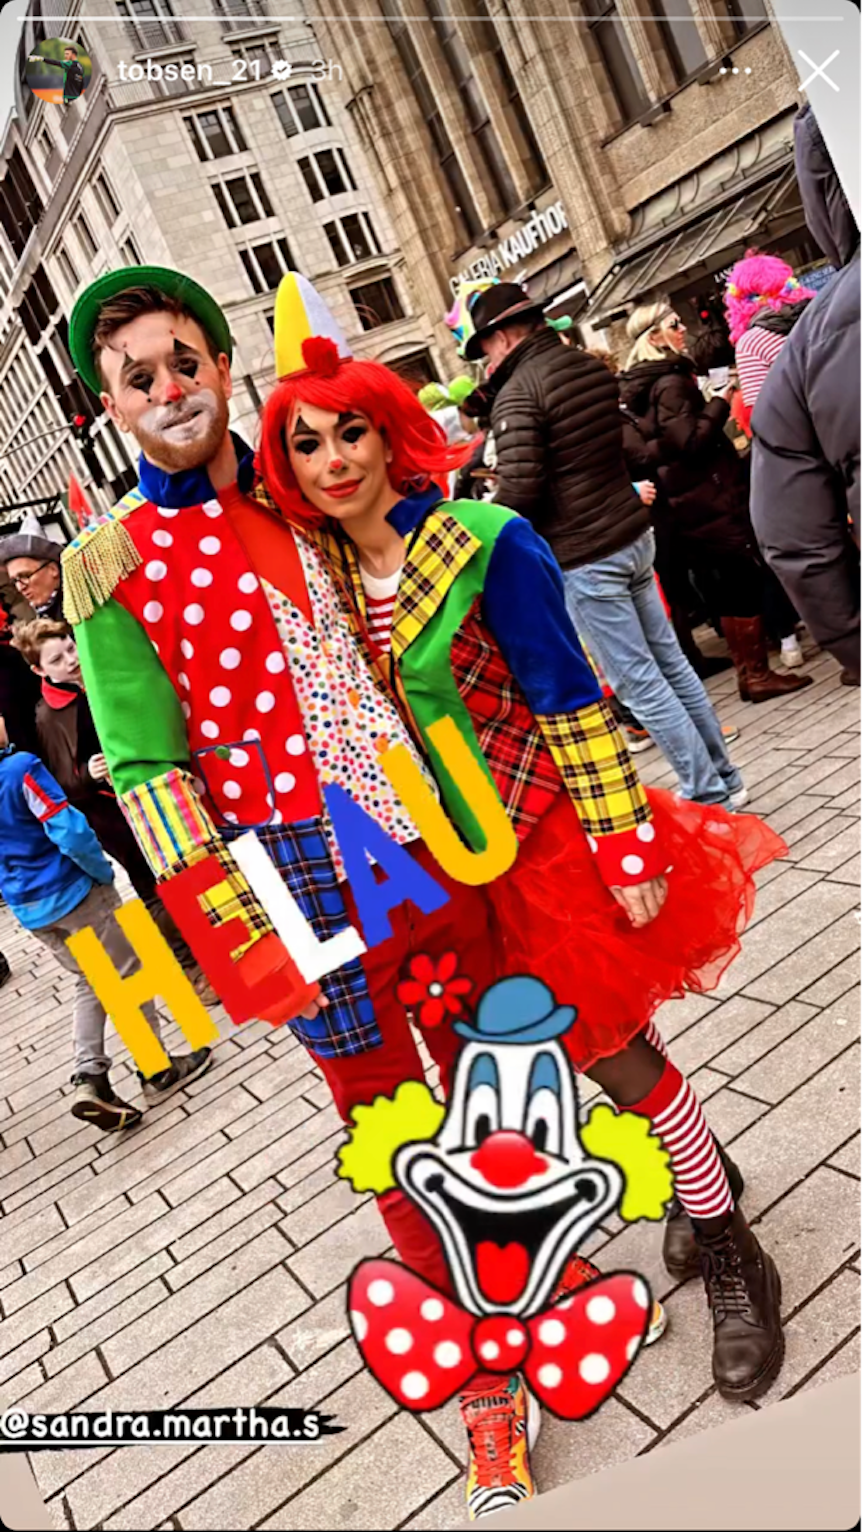 Gladbach-Profi Tobias Sippel (l.) hat gemeinsam mit seiner Frau Sandra (r.) am Rosenmontag (20. Februar 2023) verkleidet am Rosenmontagszug in Düsseldorf teilgenommen. Die beiden sind als Clowns verkleidtet.